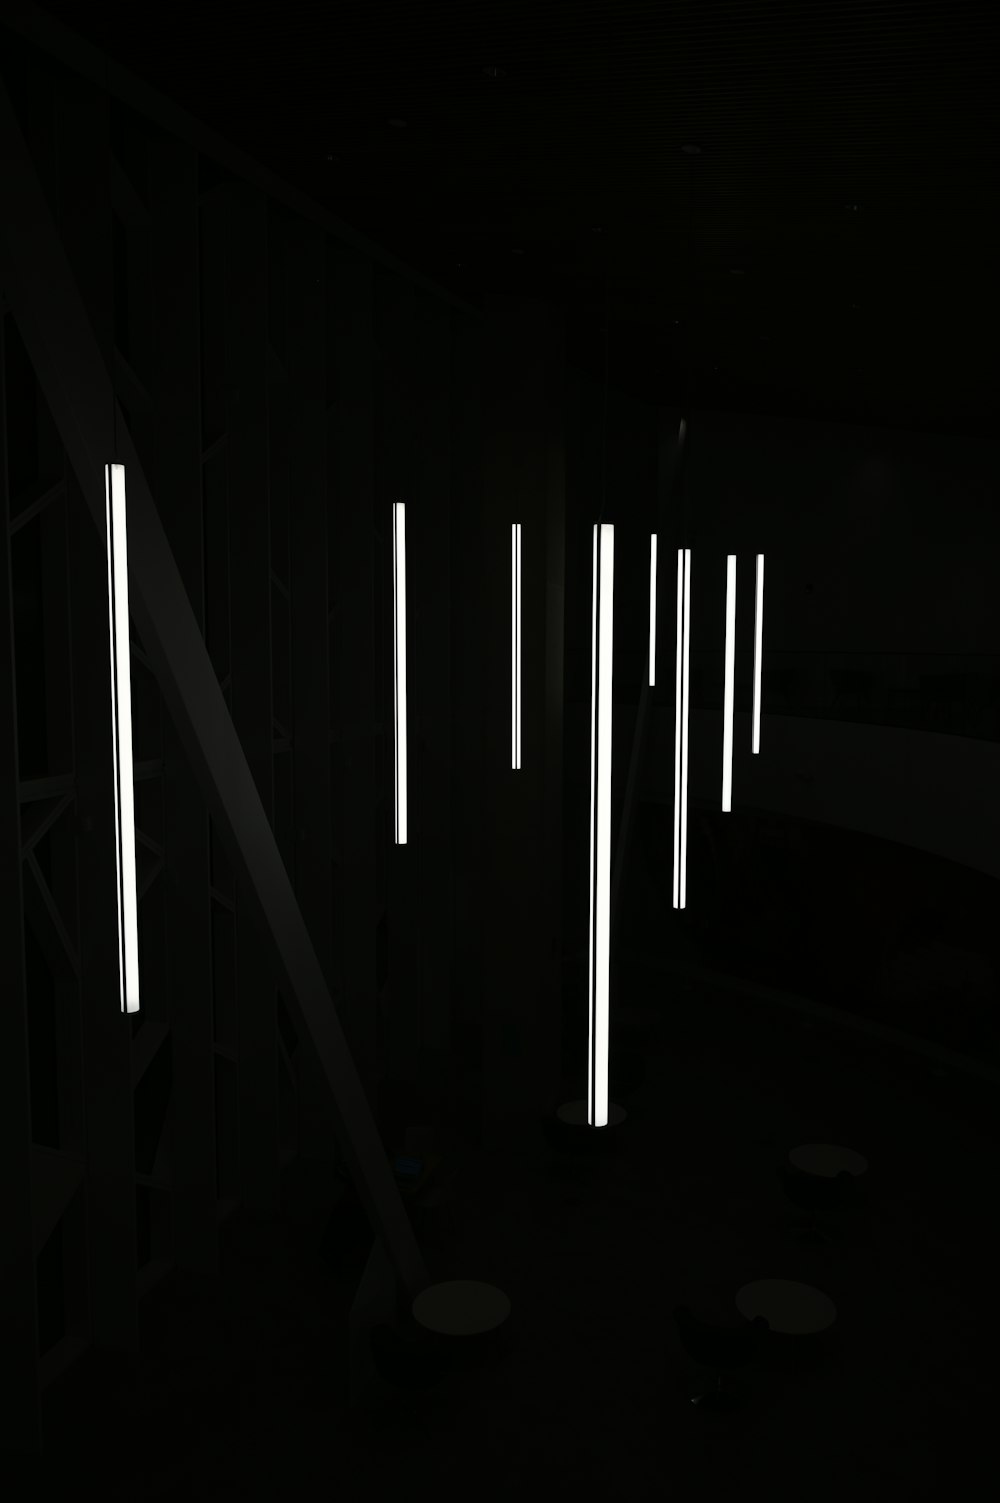 Ampoule blanche allumée dans une pièce sombre